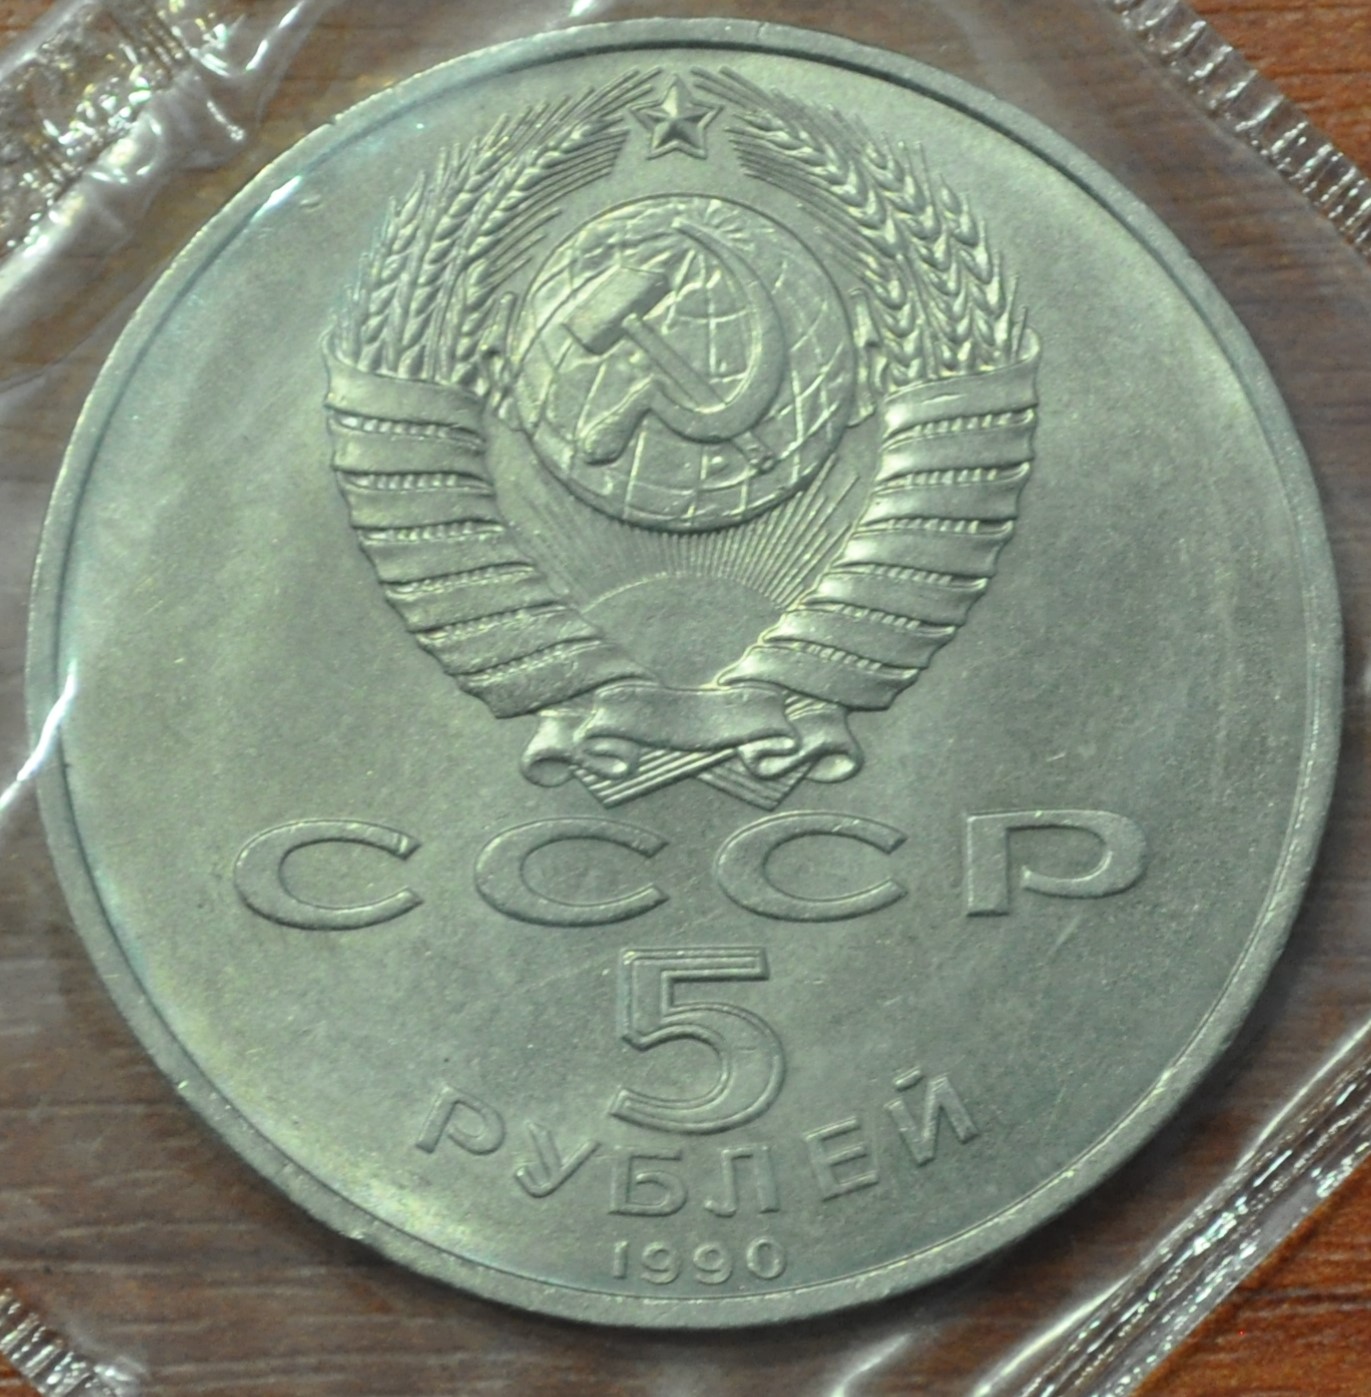 5 рублей 1990. Успенский собор в Москве (АЦ в заводской упаковке)